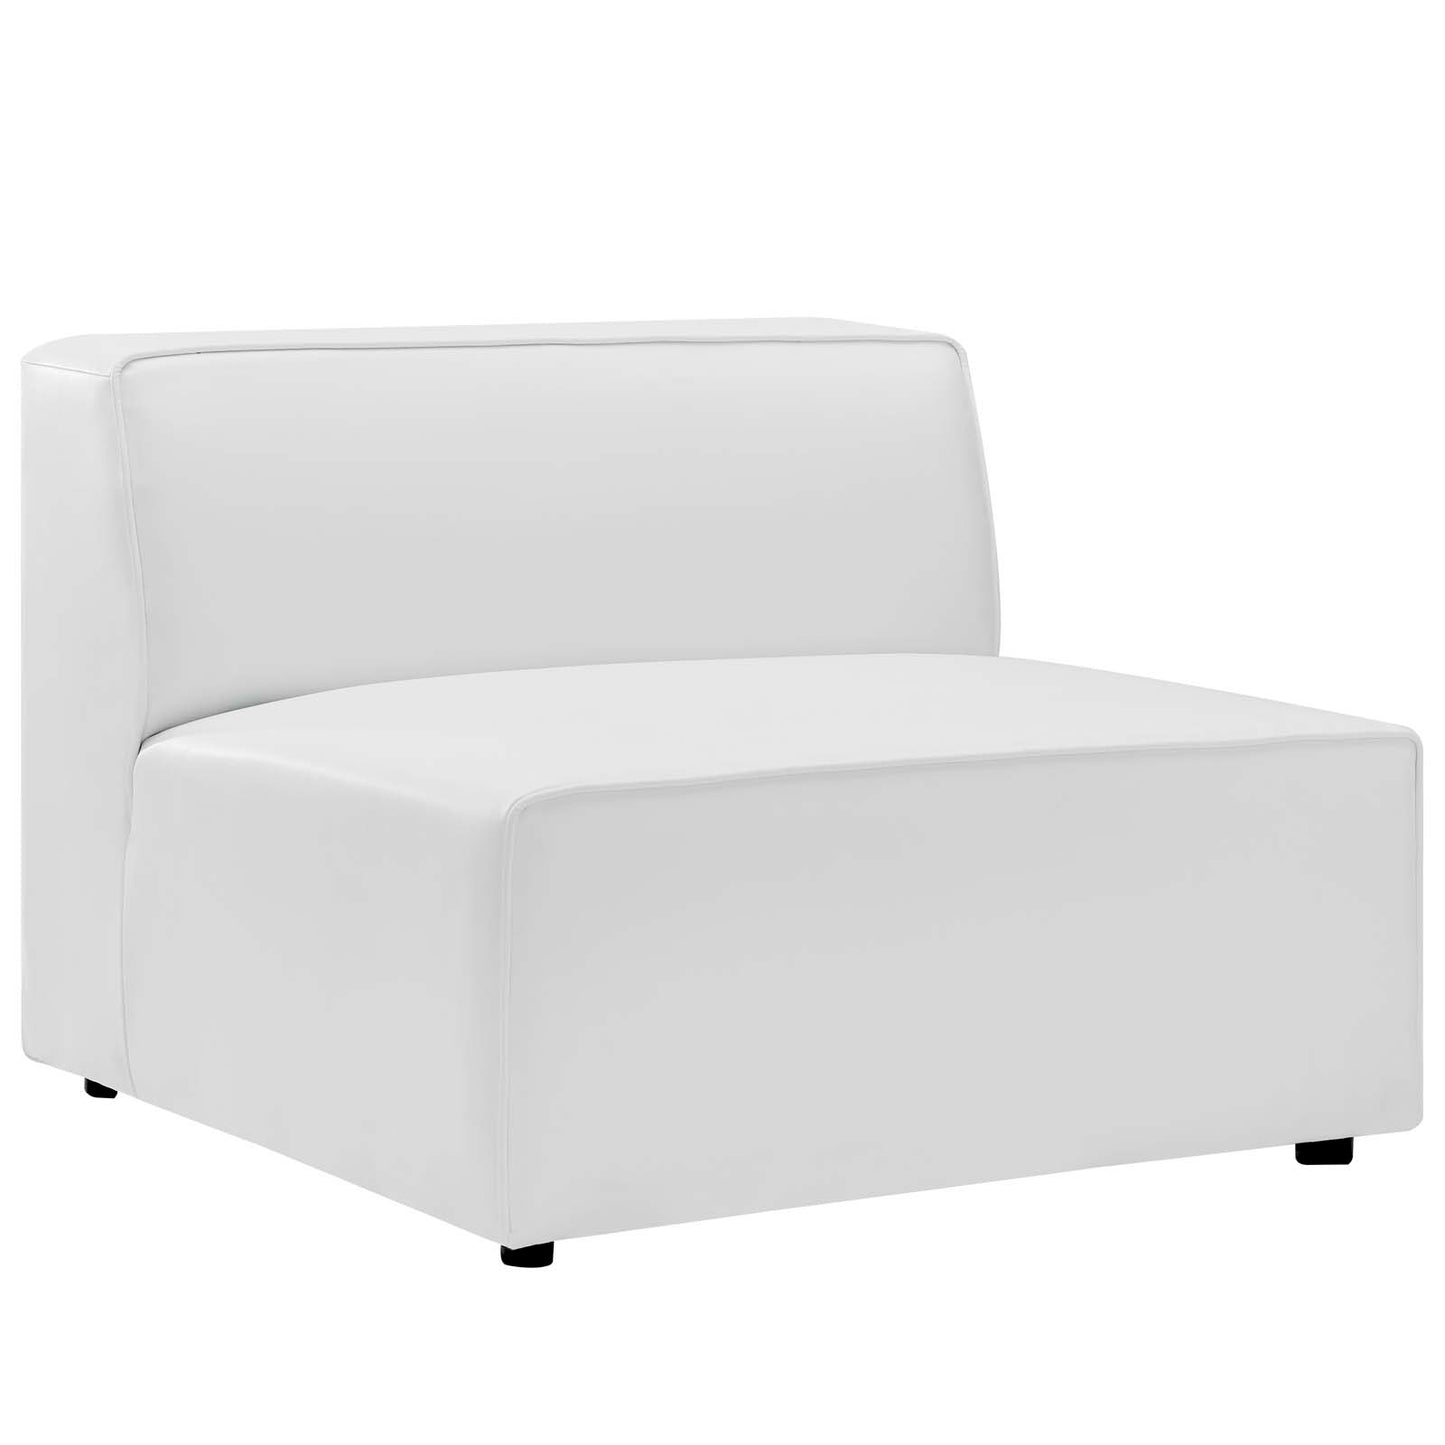 Mingle Vegan Leather 3-Piece Sectional Sofa White EEI-4789-WHI